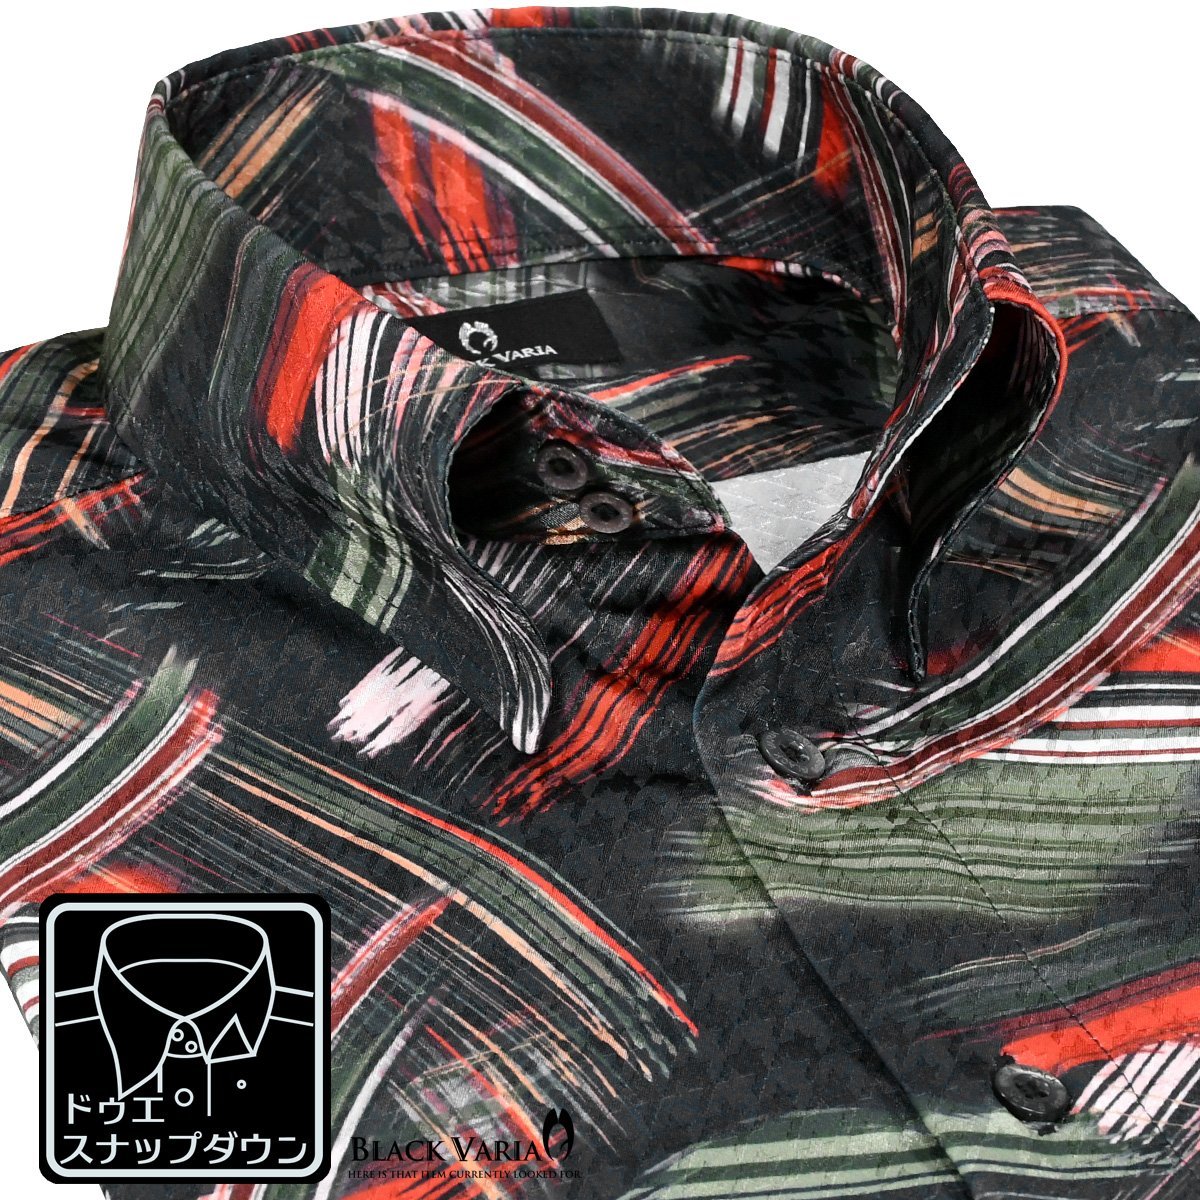 221252-bk BlackVaria ドゥエボットーニ 幾何学 筆模様 ドレスシャツ 衿先スナップボタン 千鳥ジャガード メンズ(ブラック黒グリーン緑) L